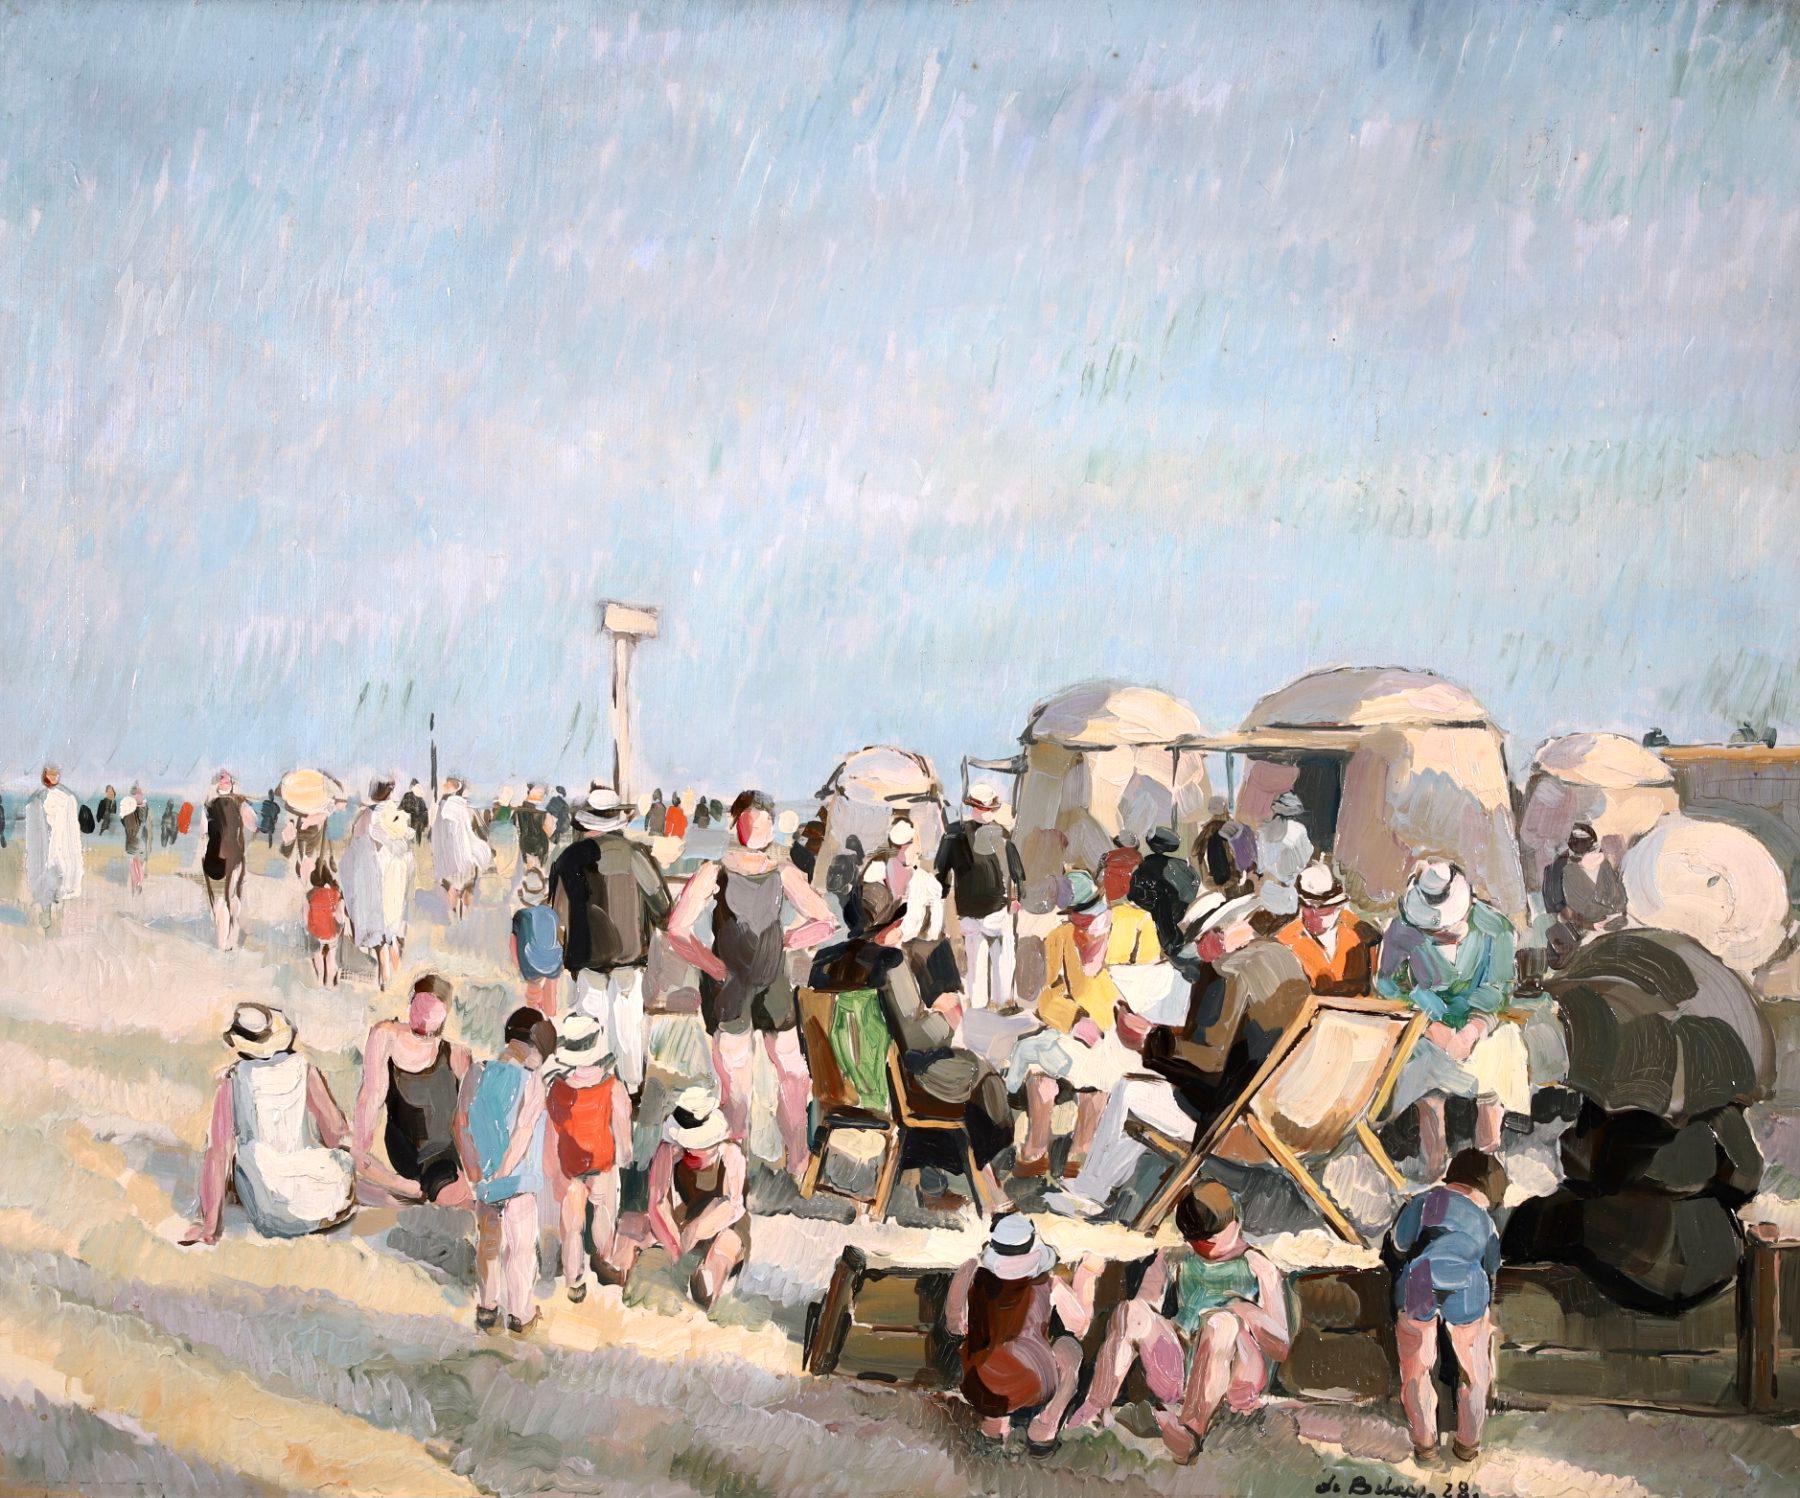 Une belle huile sur panneau du peintre post-impressionniste français Pierre de Belay. L'œuvre représente des familles se détendant sur la plage de Villerville, sous un ciel bleu clair, par une belle journée d'été. De Belay a peint la plage de